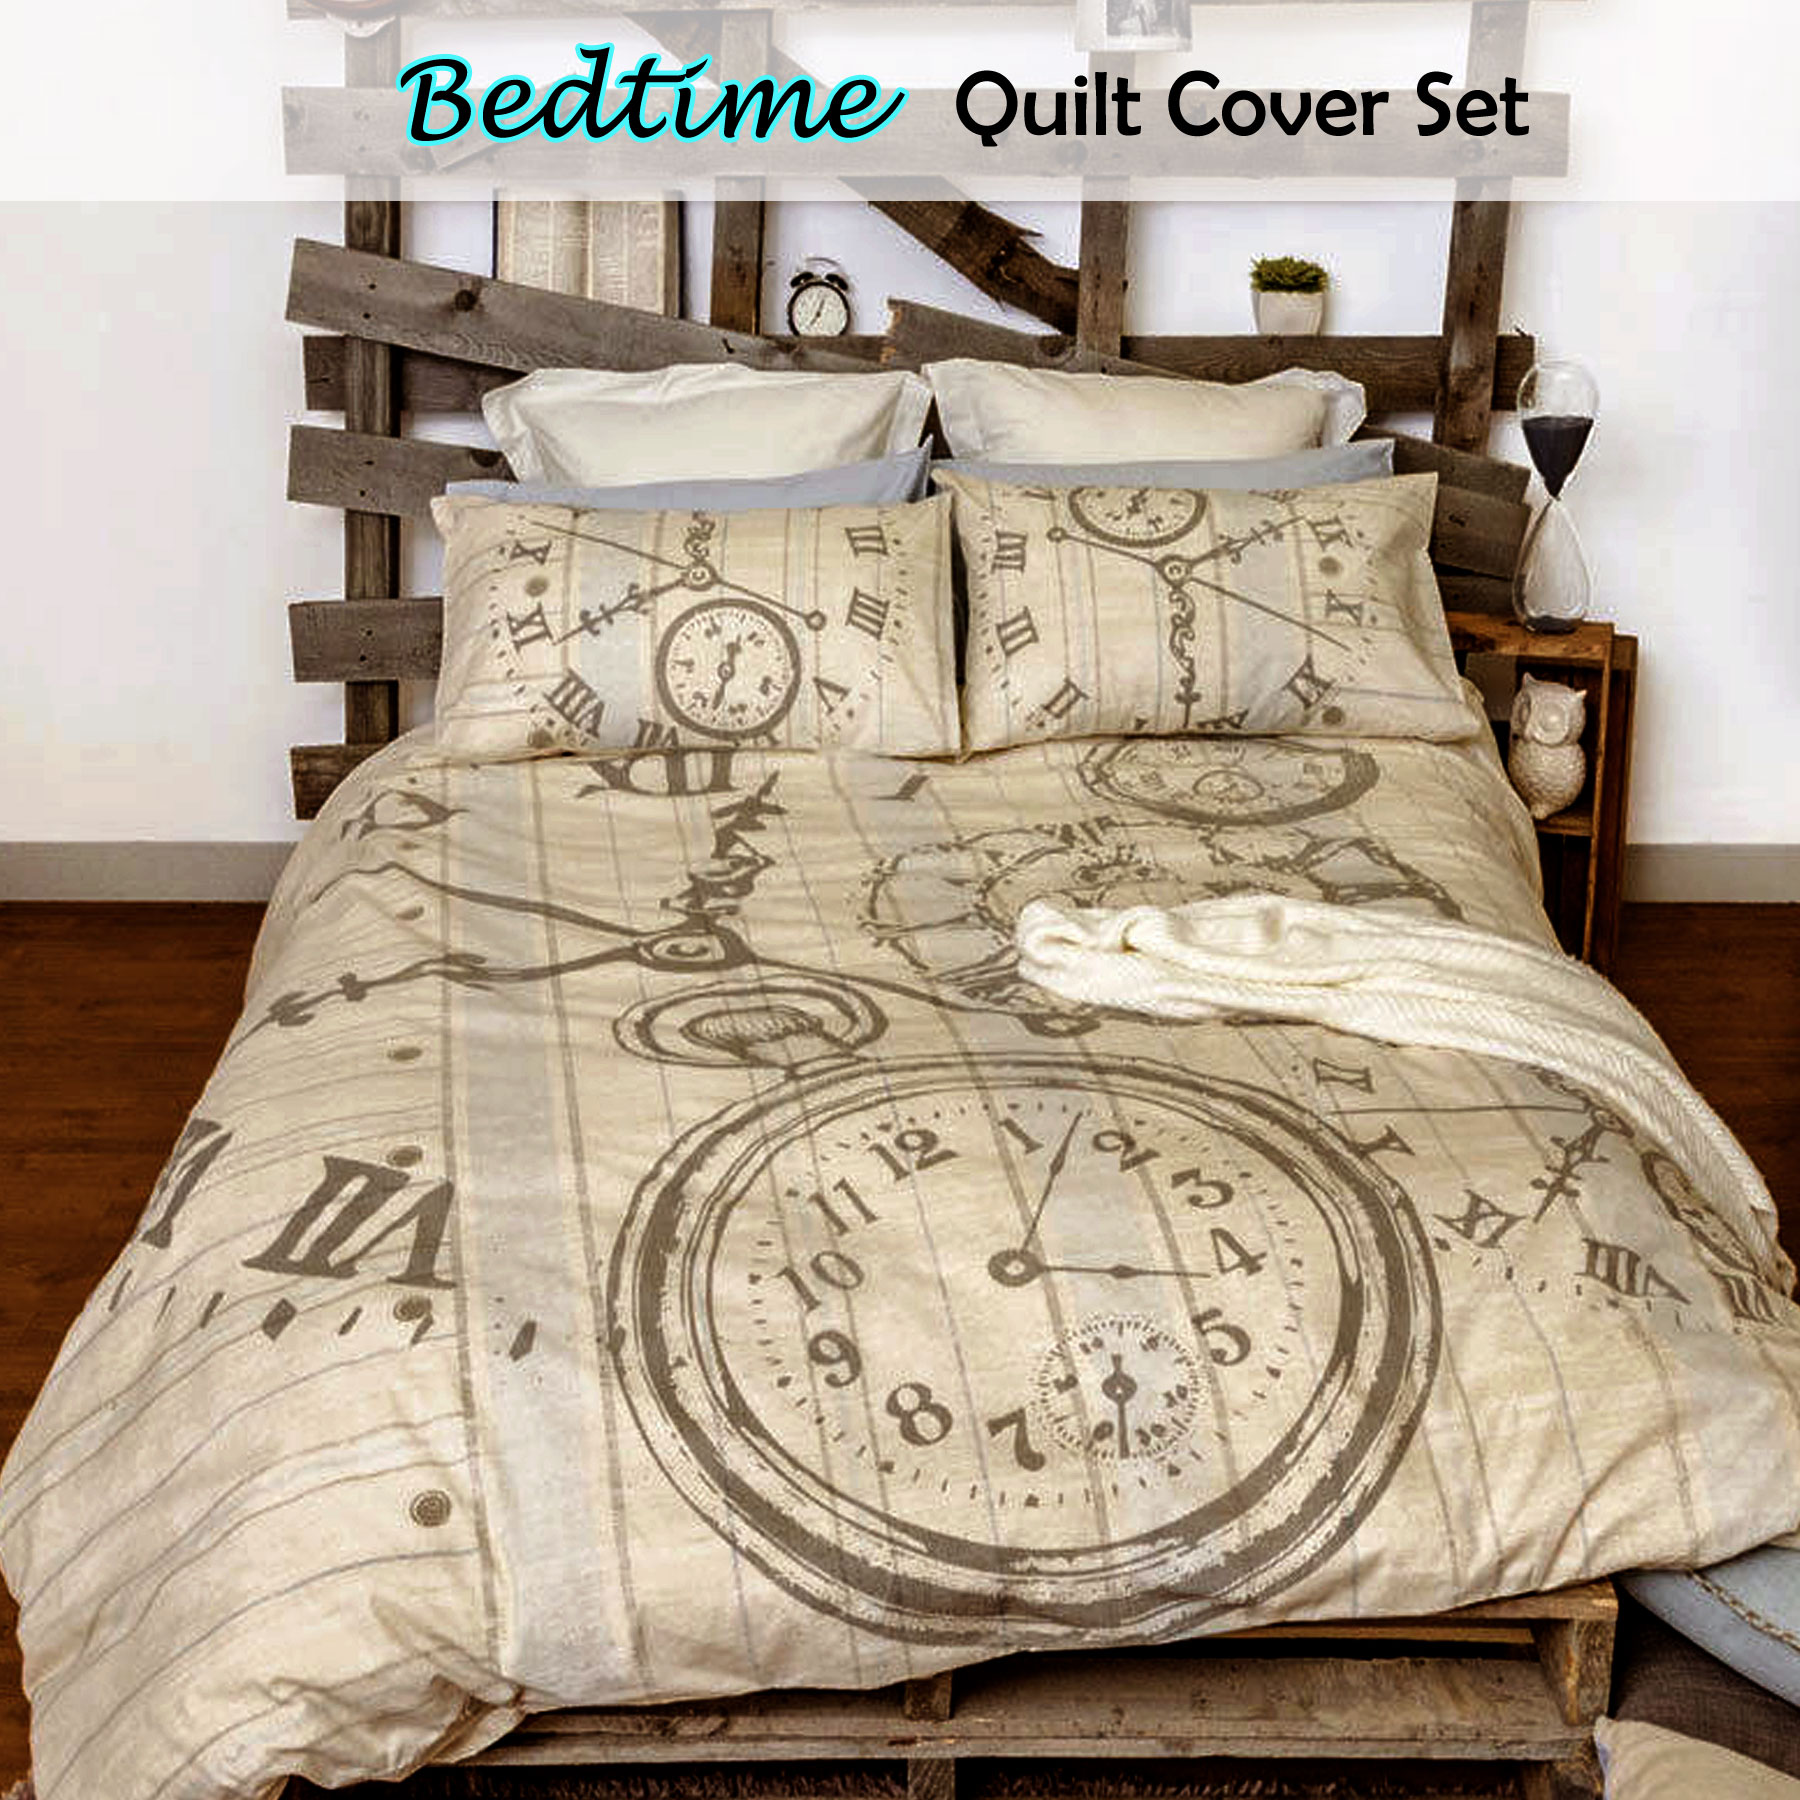 Retro Home Bedtime Neutral Vintage Quilt Cover Set Single Double